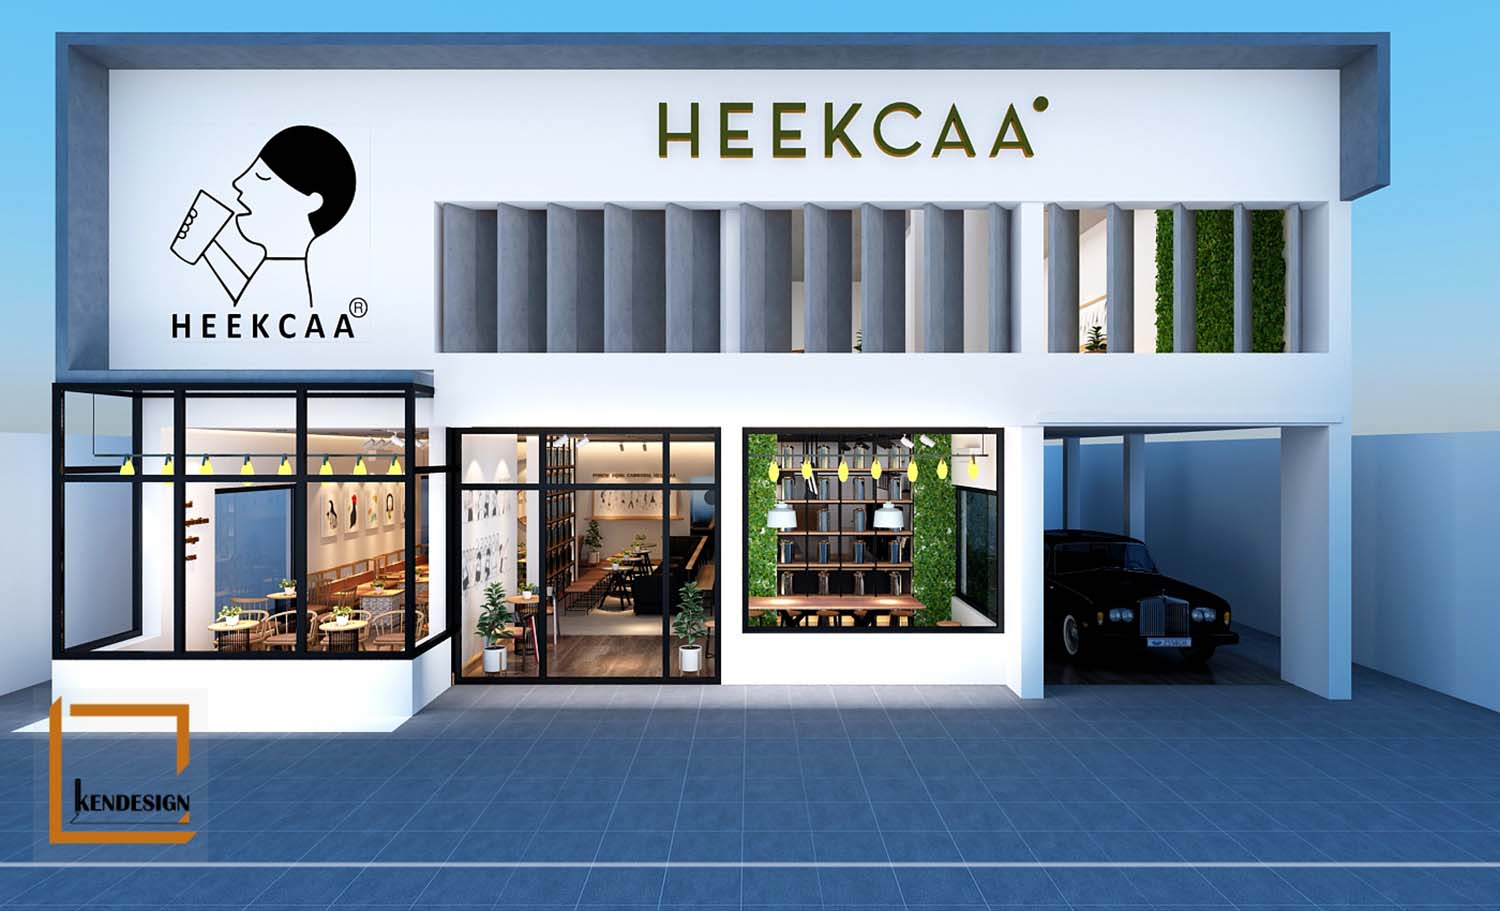 Heekcaa Combodia milk tea shop design